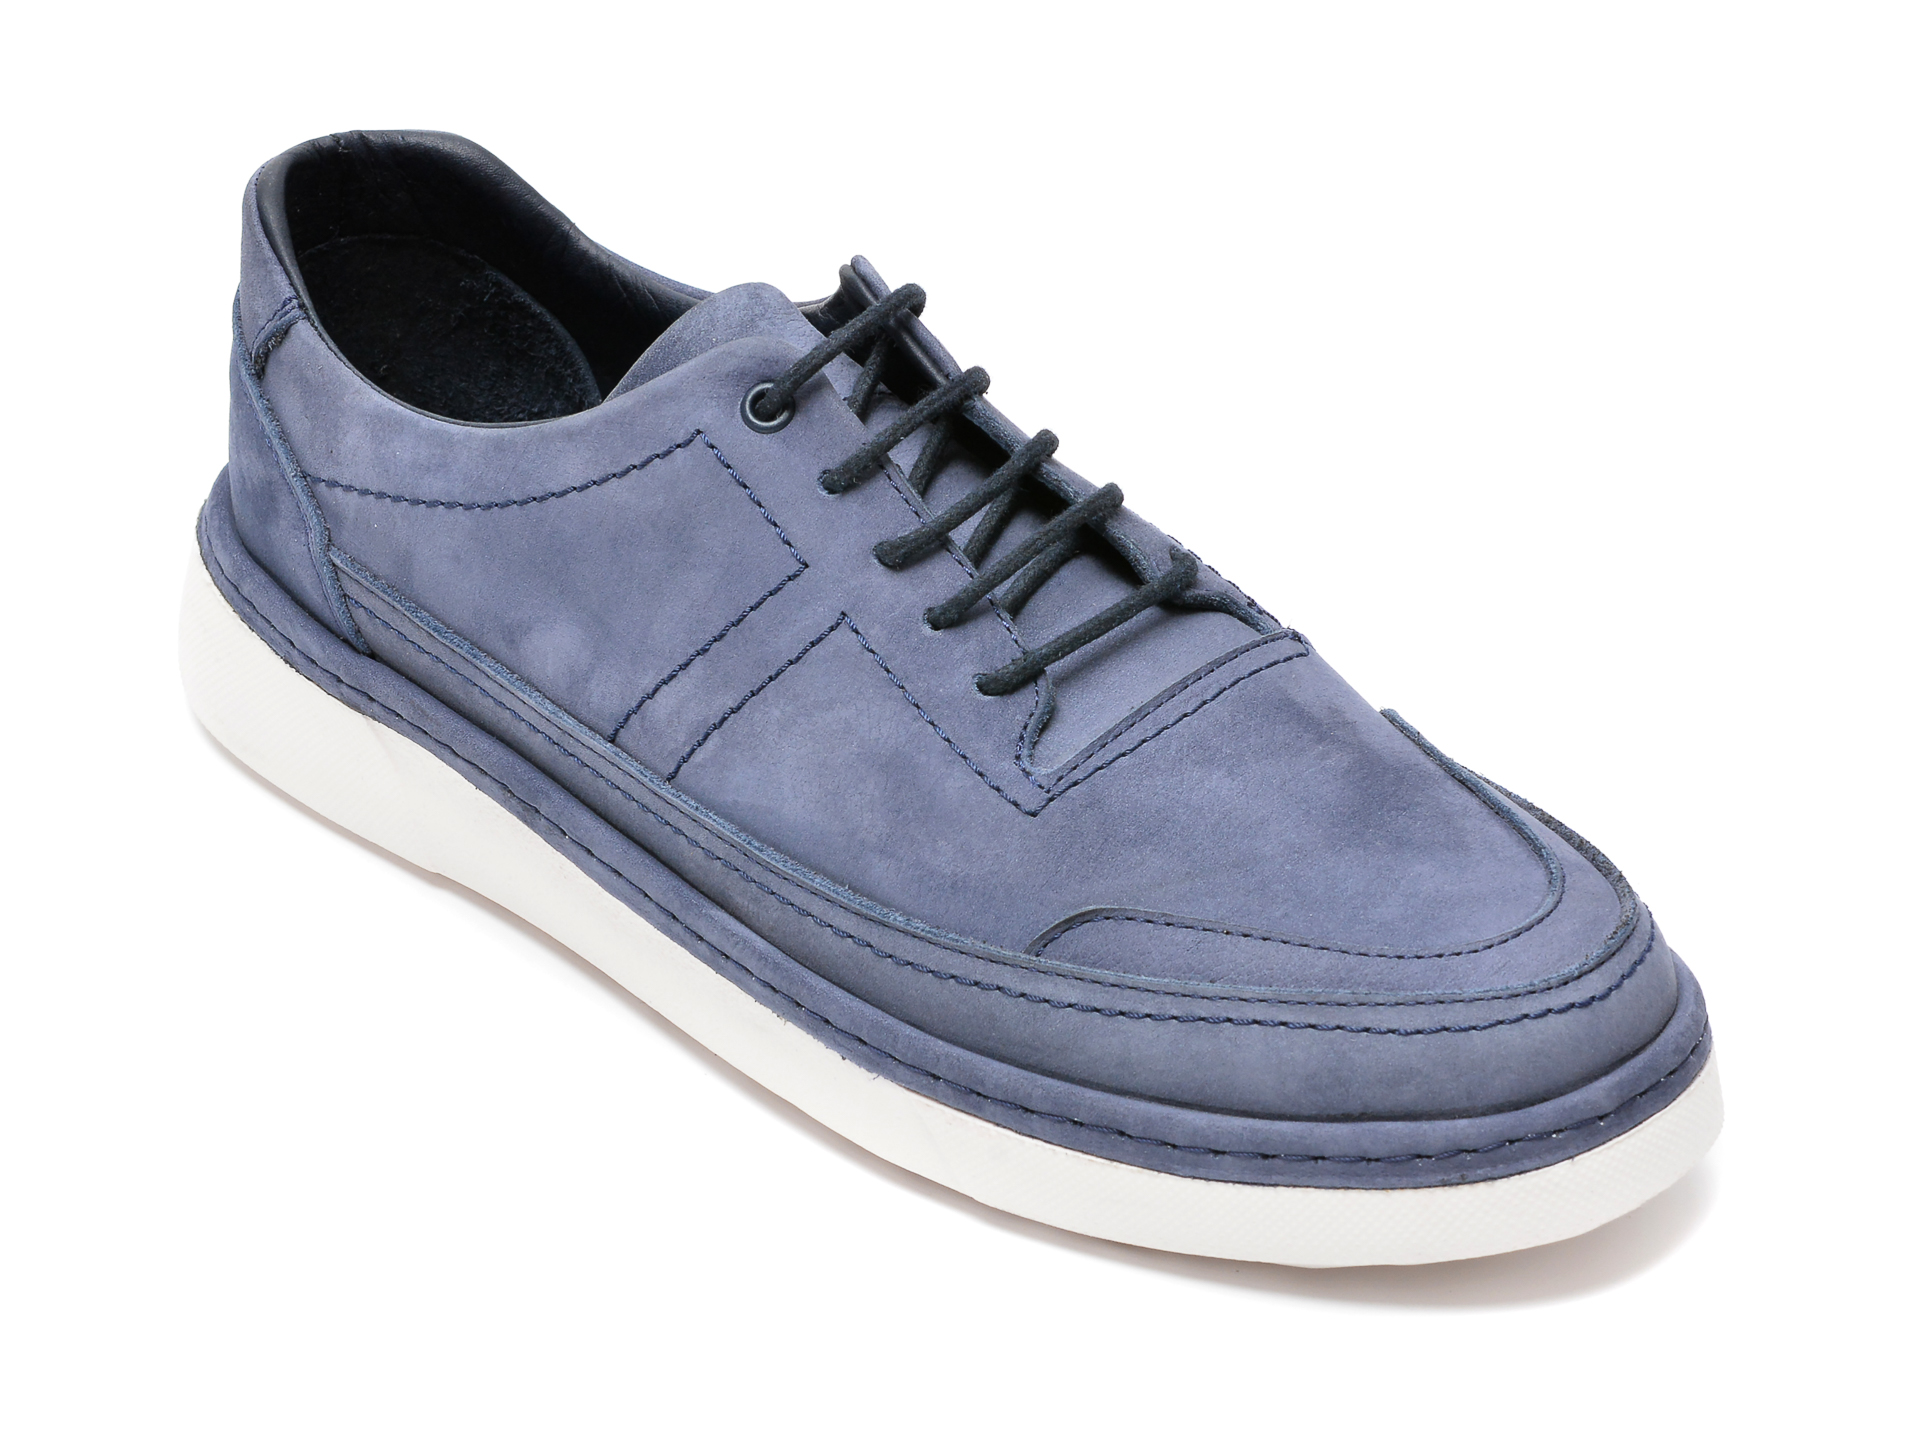 Pantofi OTTER albastri, M63569, din nabuc